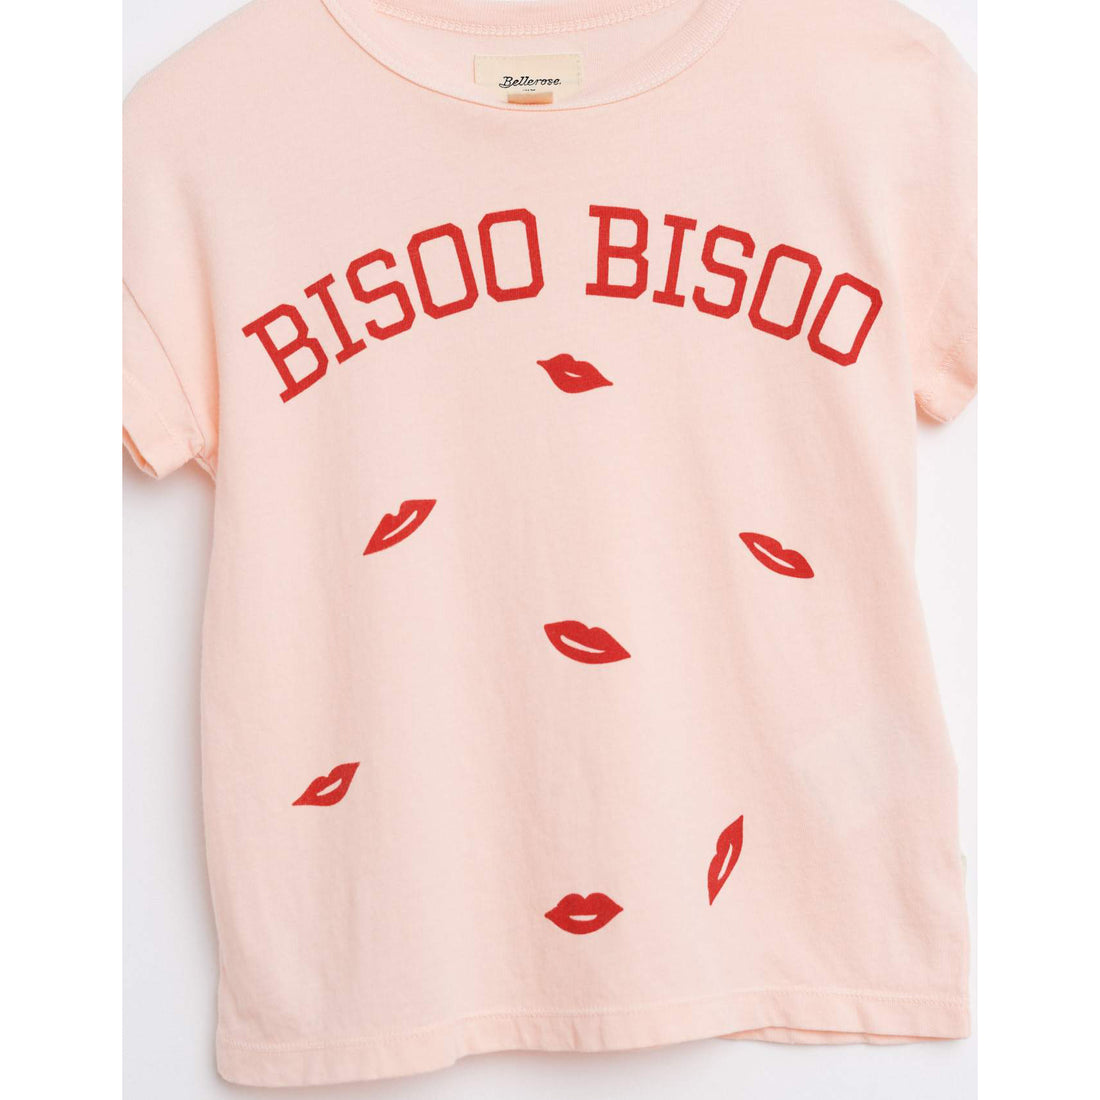 bellerose-ay0a91-t1237b-t-shirt-light-rose- (2)